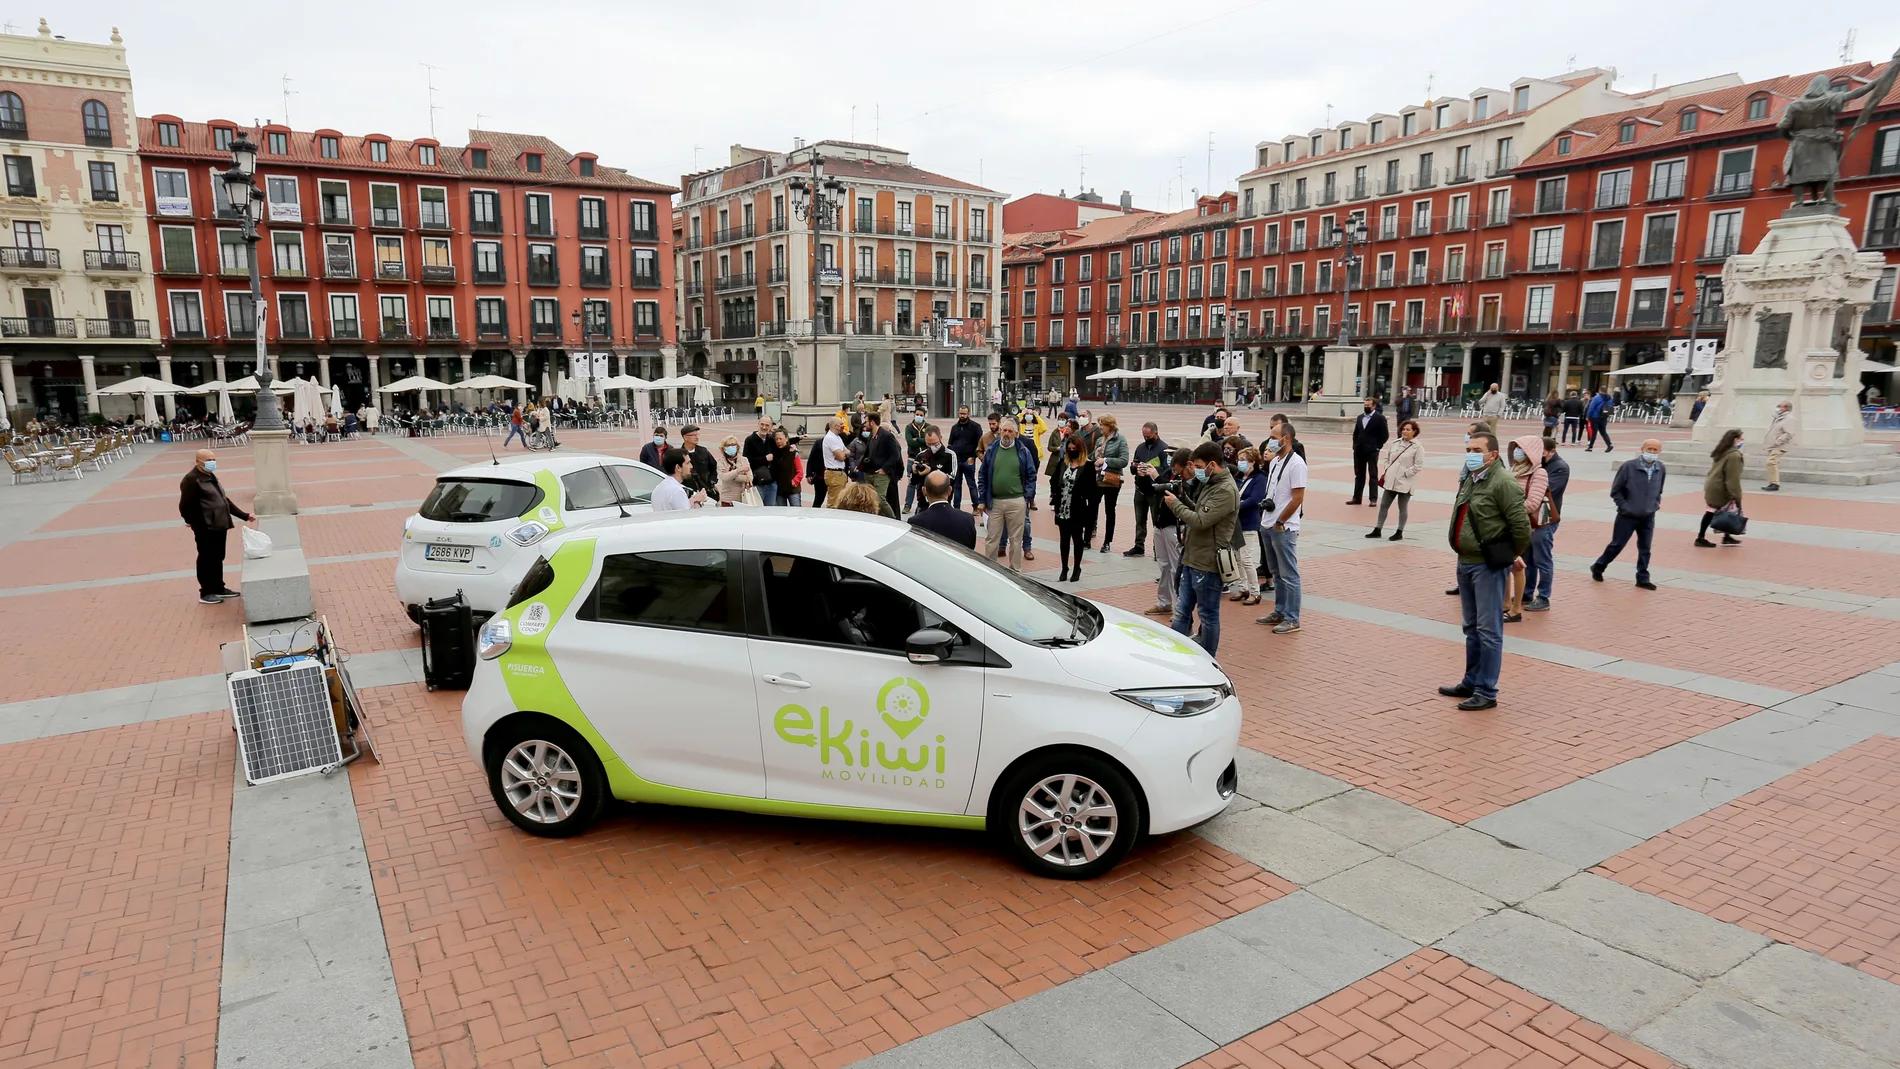 La Plaza Mayor de Valladolid acoge la presentación oficial de la cooperativa 'Ekiwi movilidad', que defiende una movilidad respetuosa con el medio ambiente y con las personas